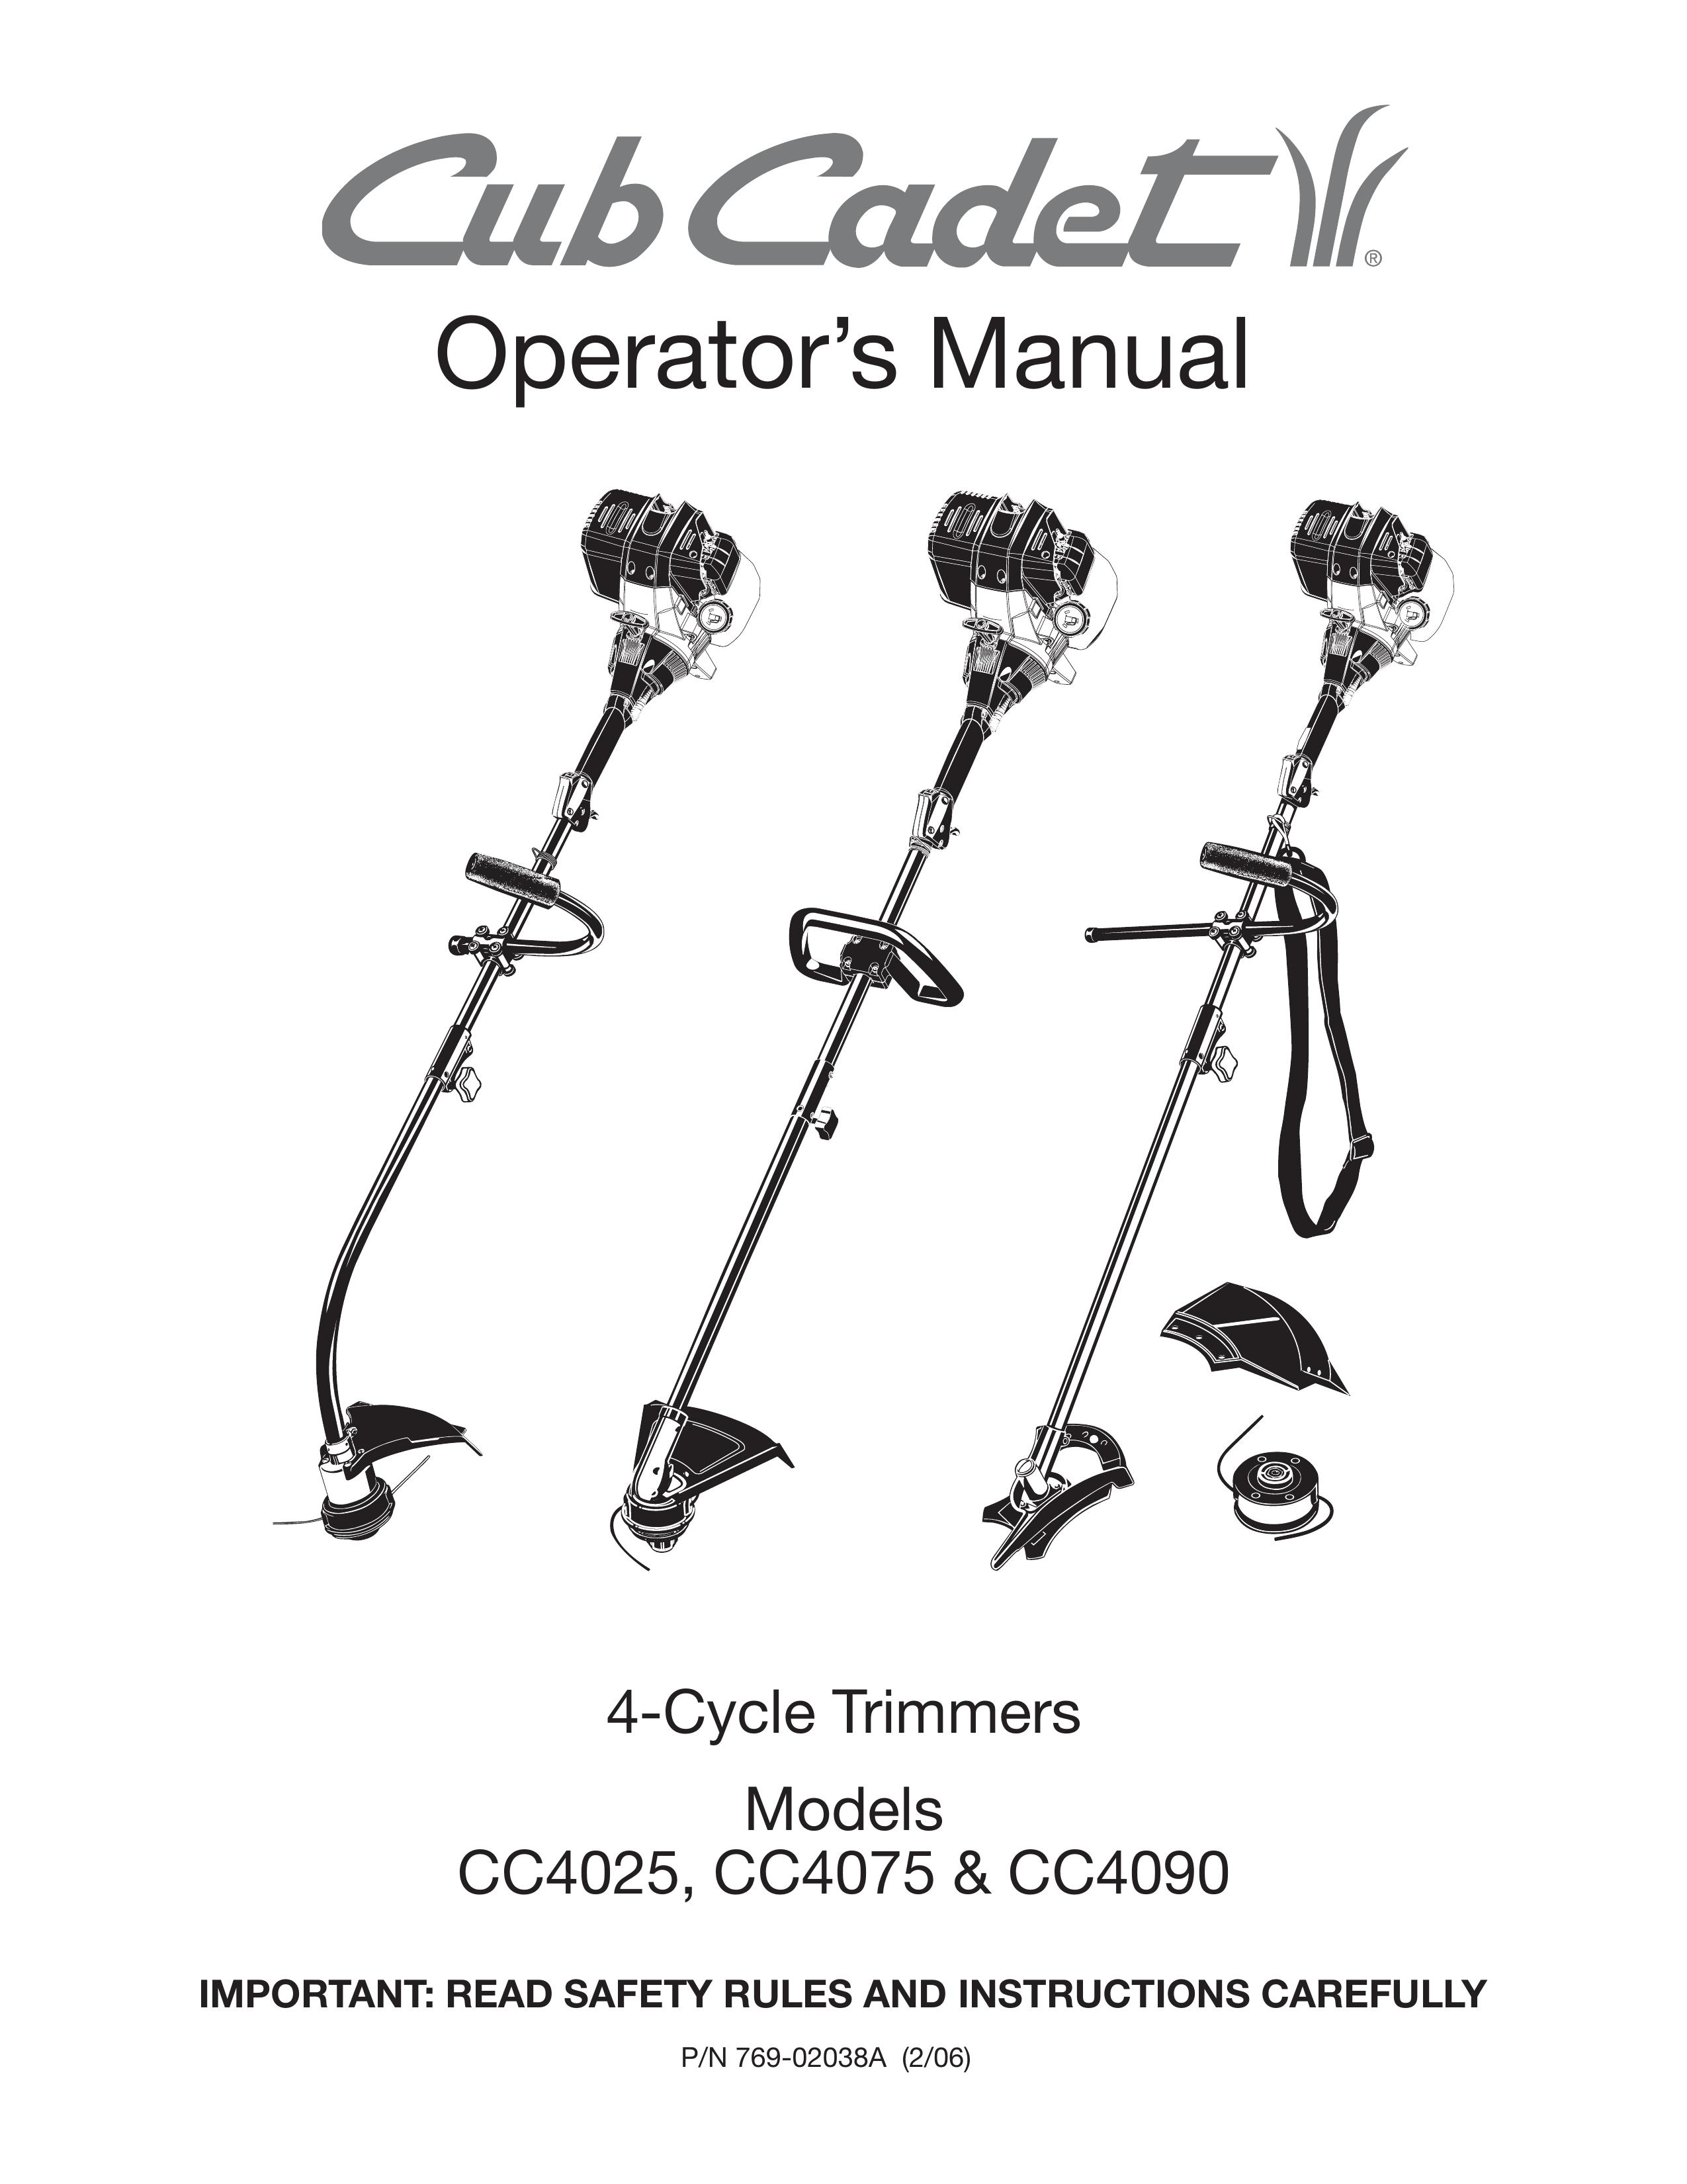 Cub Cadet CC4075 Trimmer User Manual